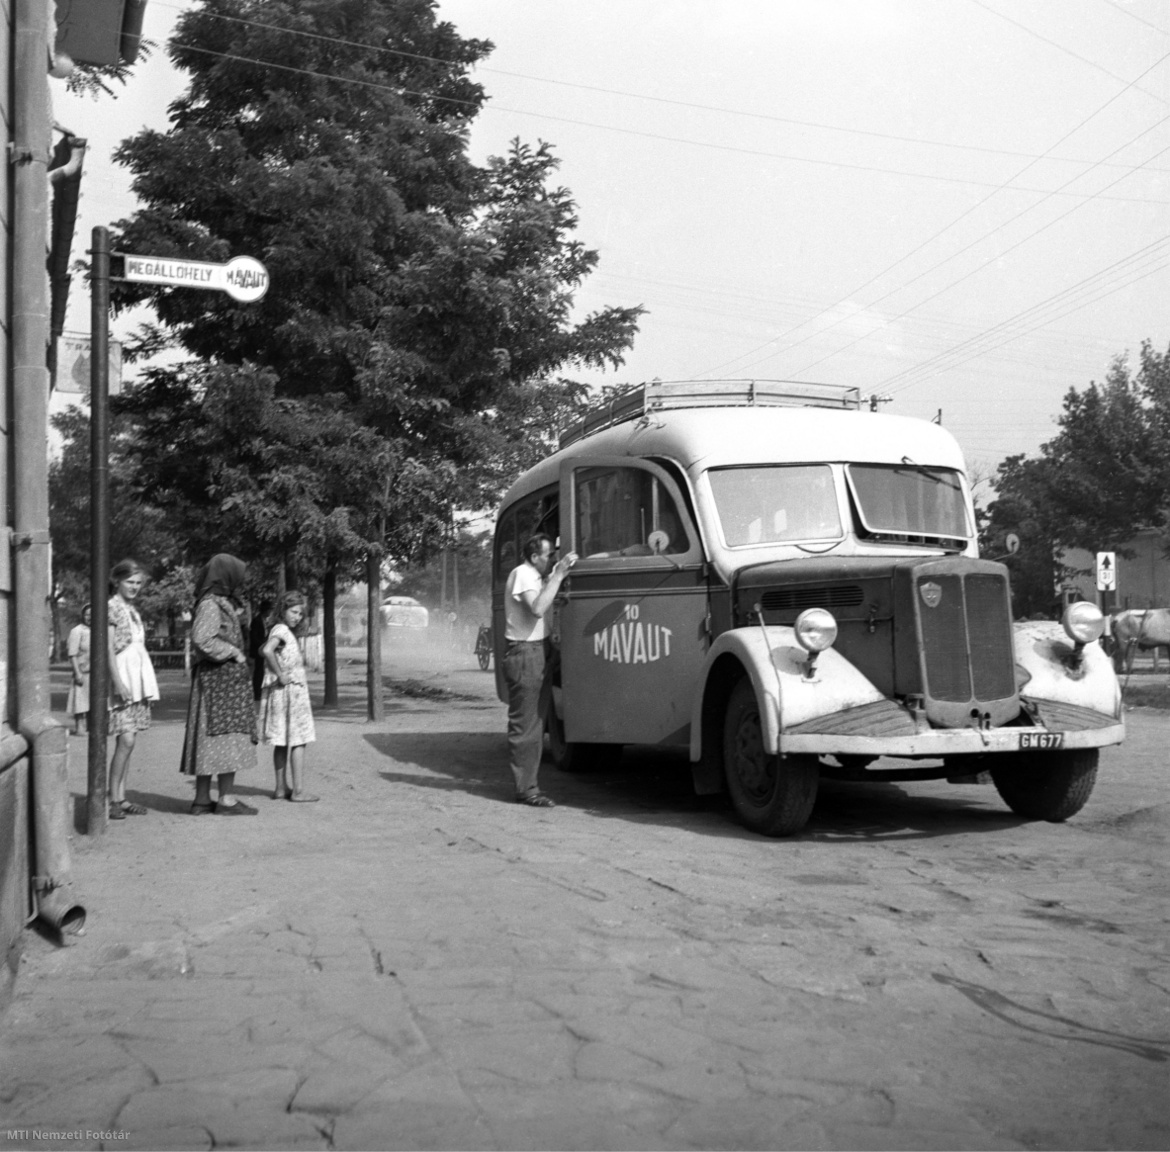 Jászapáti, 1955. szeptember 1. Megérkezik a MÁVAUT autóbusza a megállóba. 